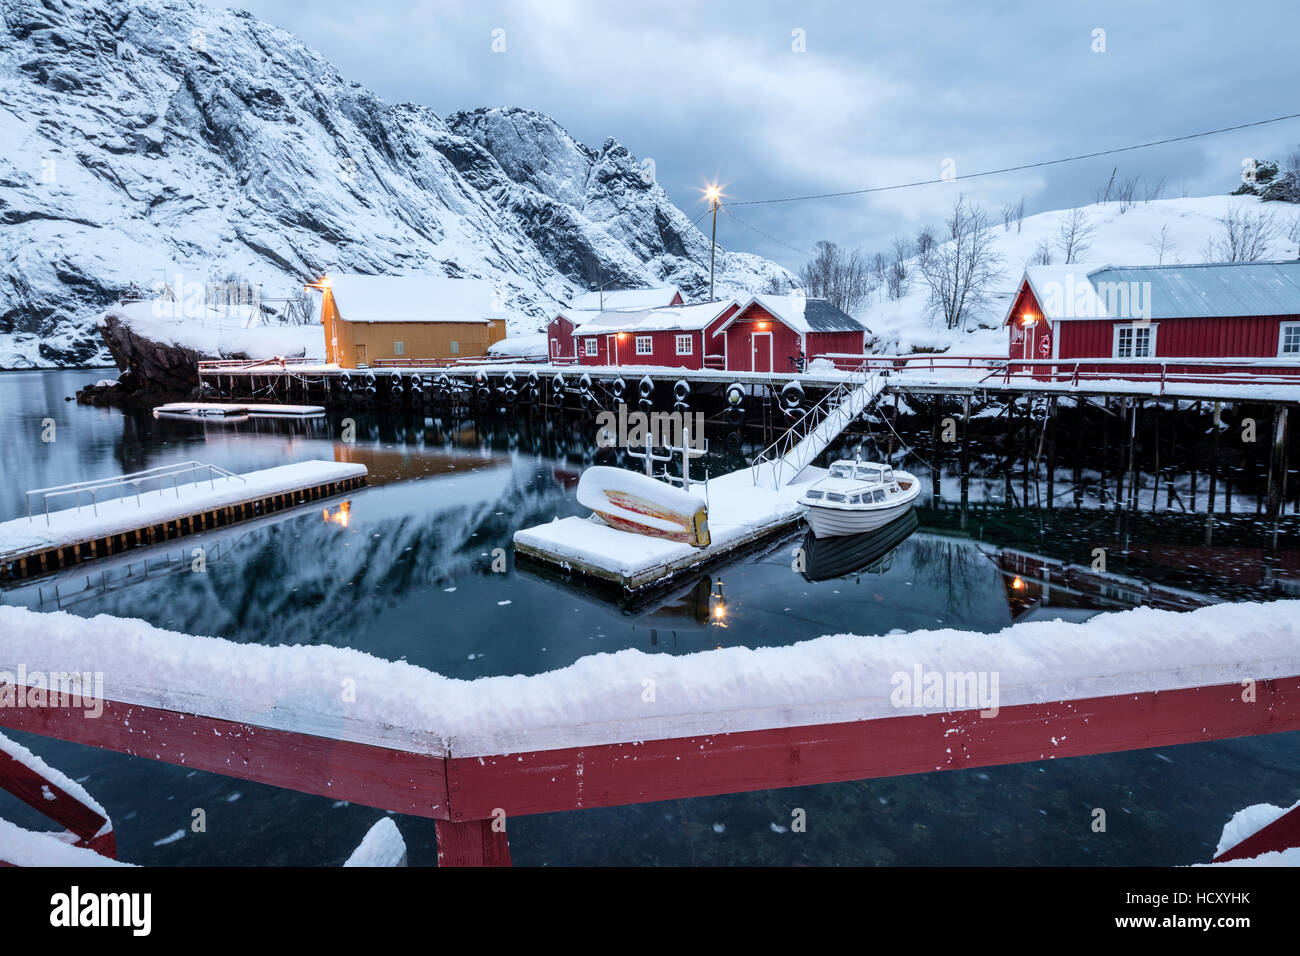 La mer froide du châssis et des sommets enneigés le village de pêcheurs au crépuscule, Nusfjord, Nordland, îles Lofoten, dans le Nord de la Norvège Banque D'Images